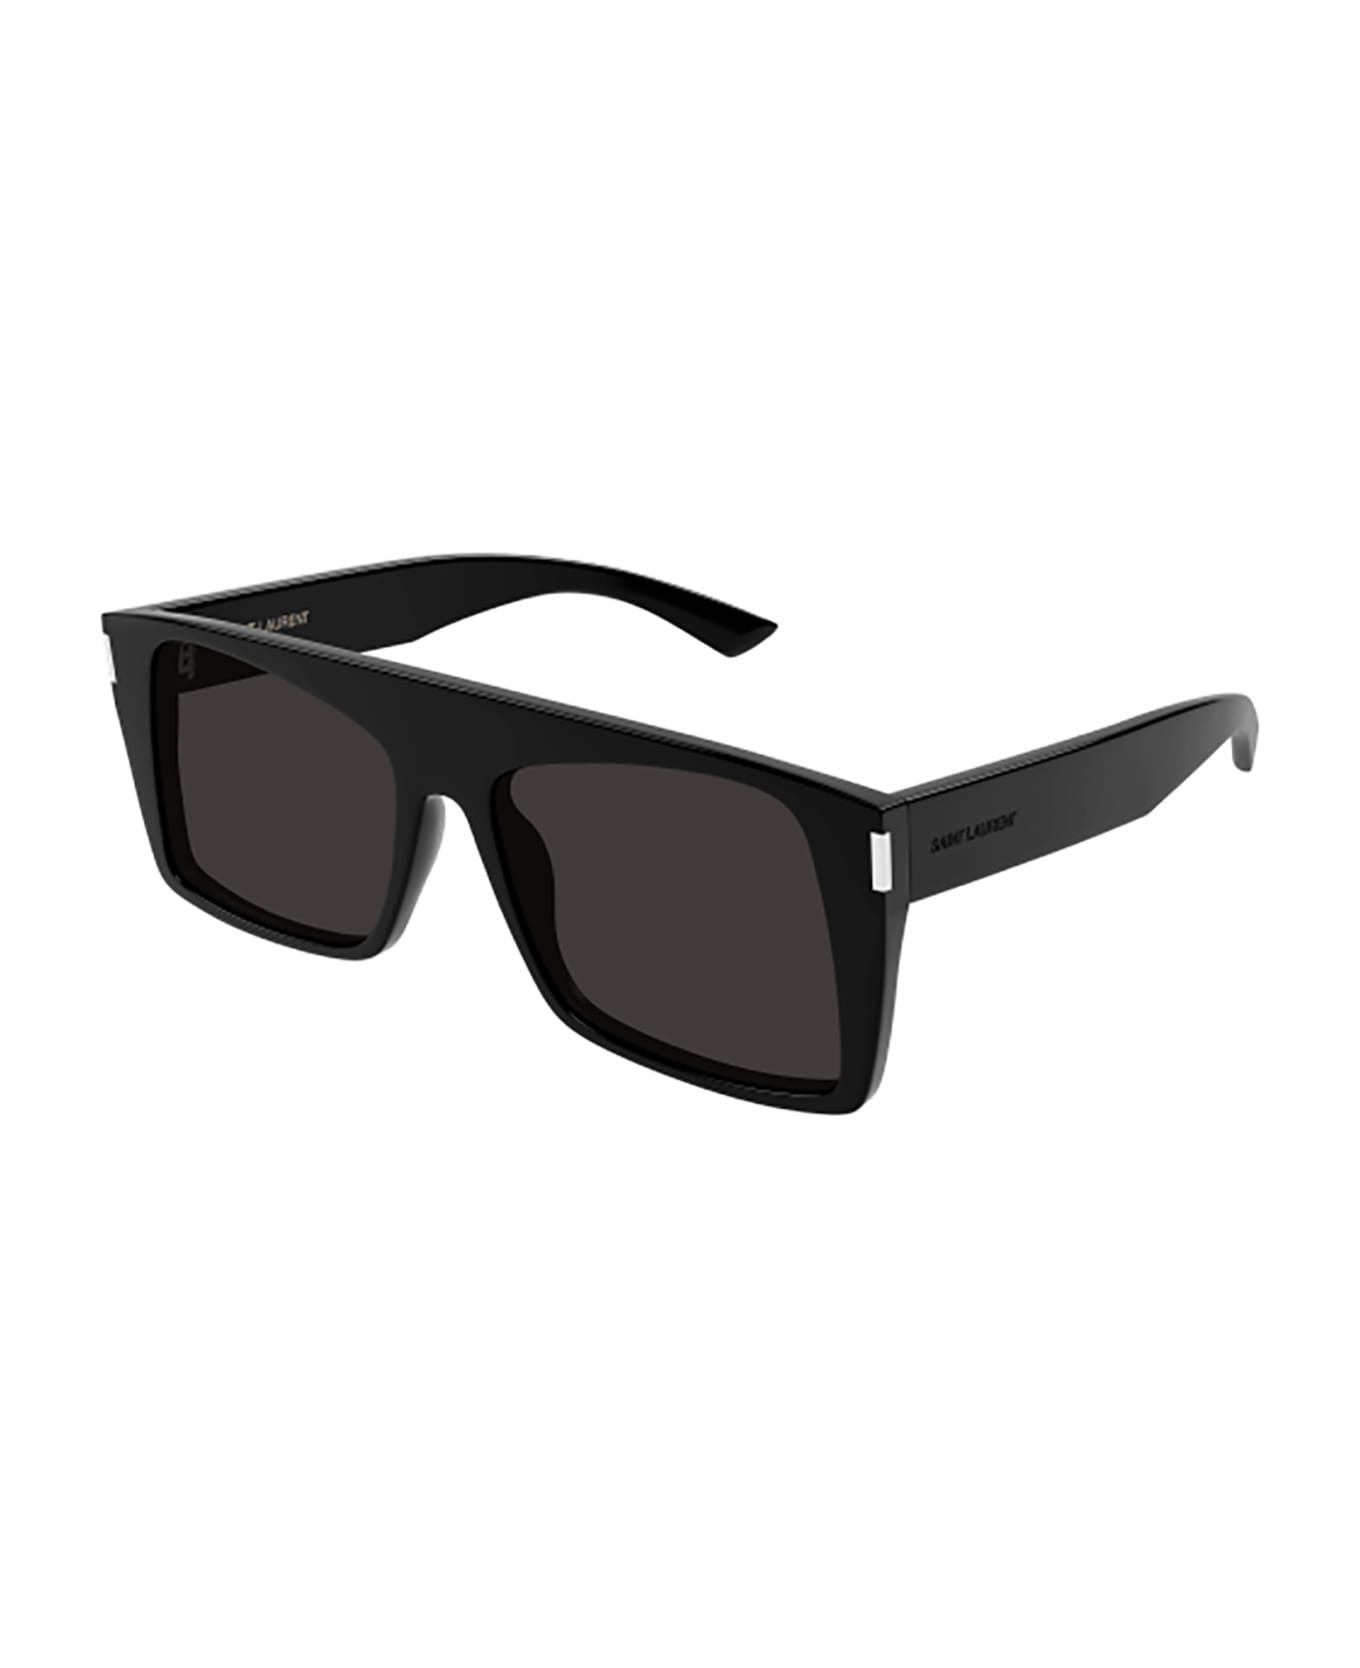 Saint Laurent Eyewear SL 651 VITTI Sunglasses - Sunglasses CARA FT 0940